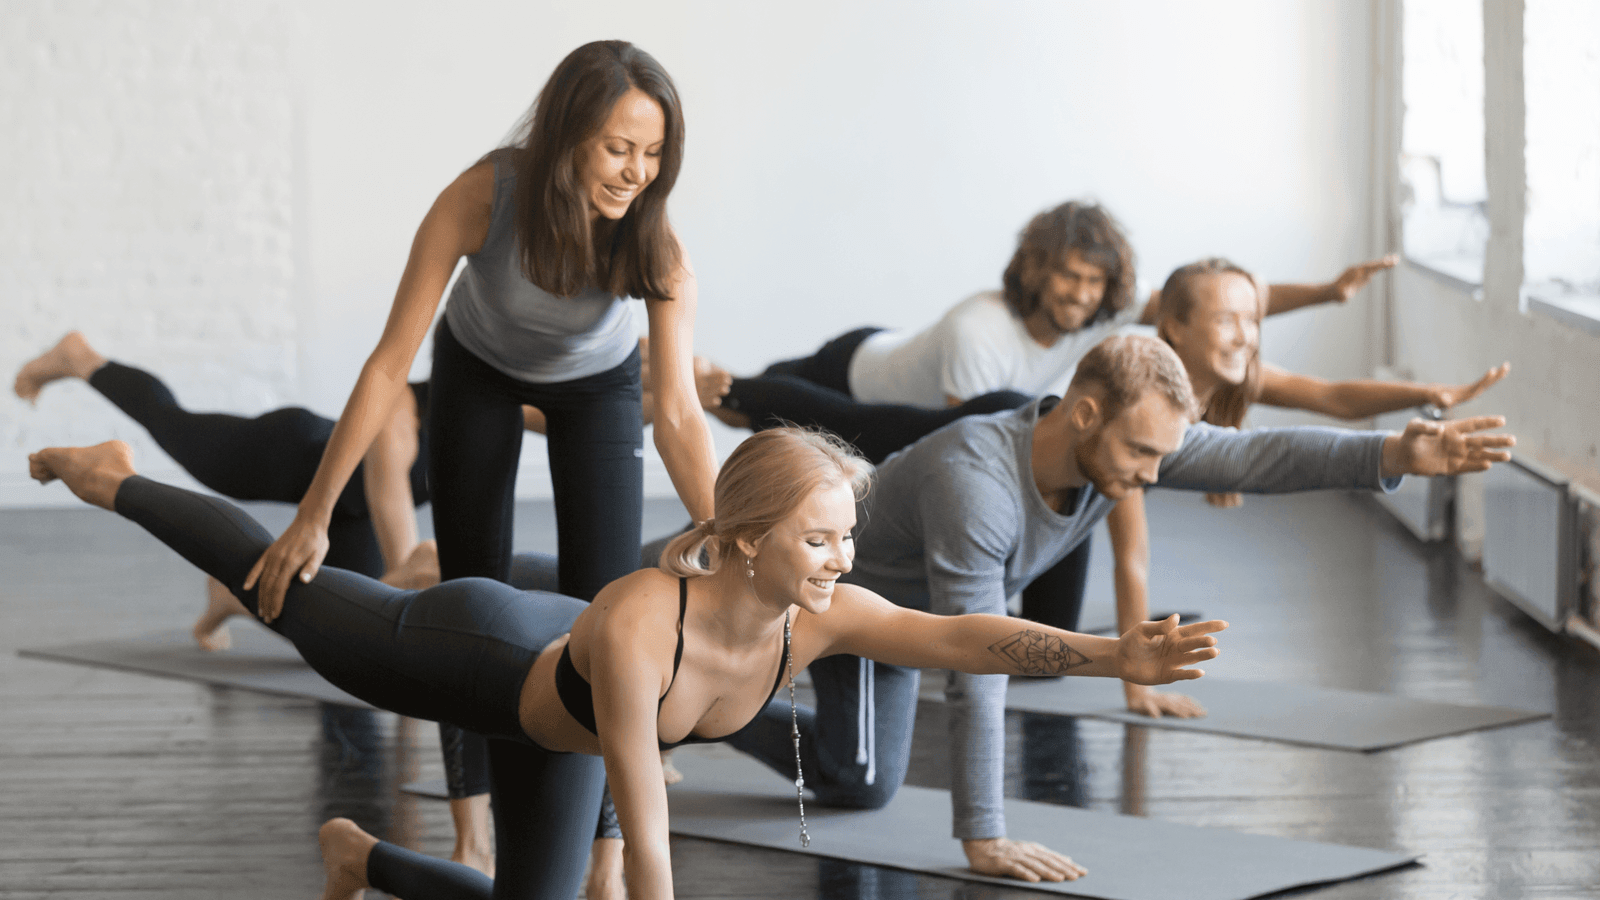 Làm giáo viên Yoga mang đến sức khỏe cho cộng đồng